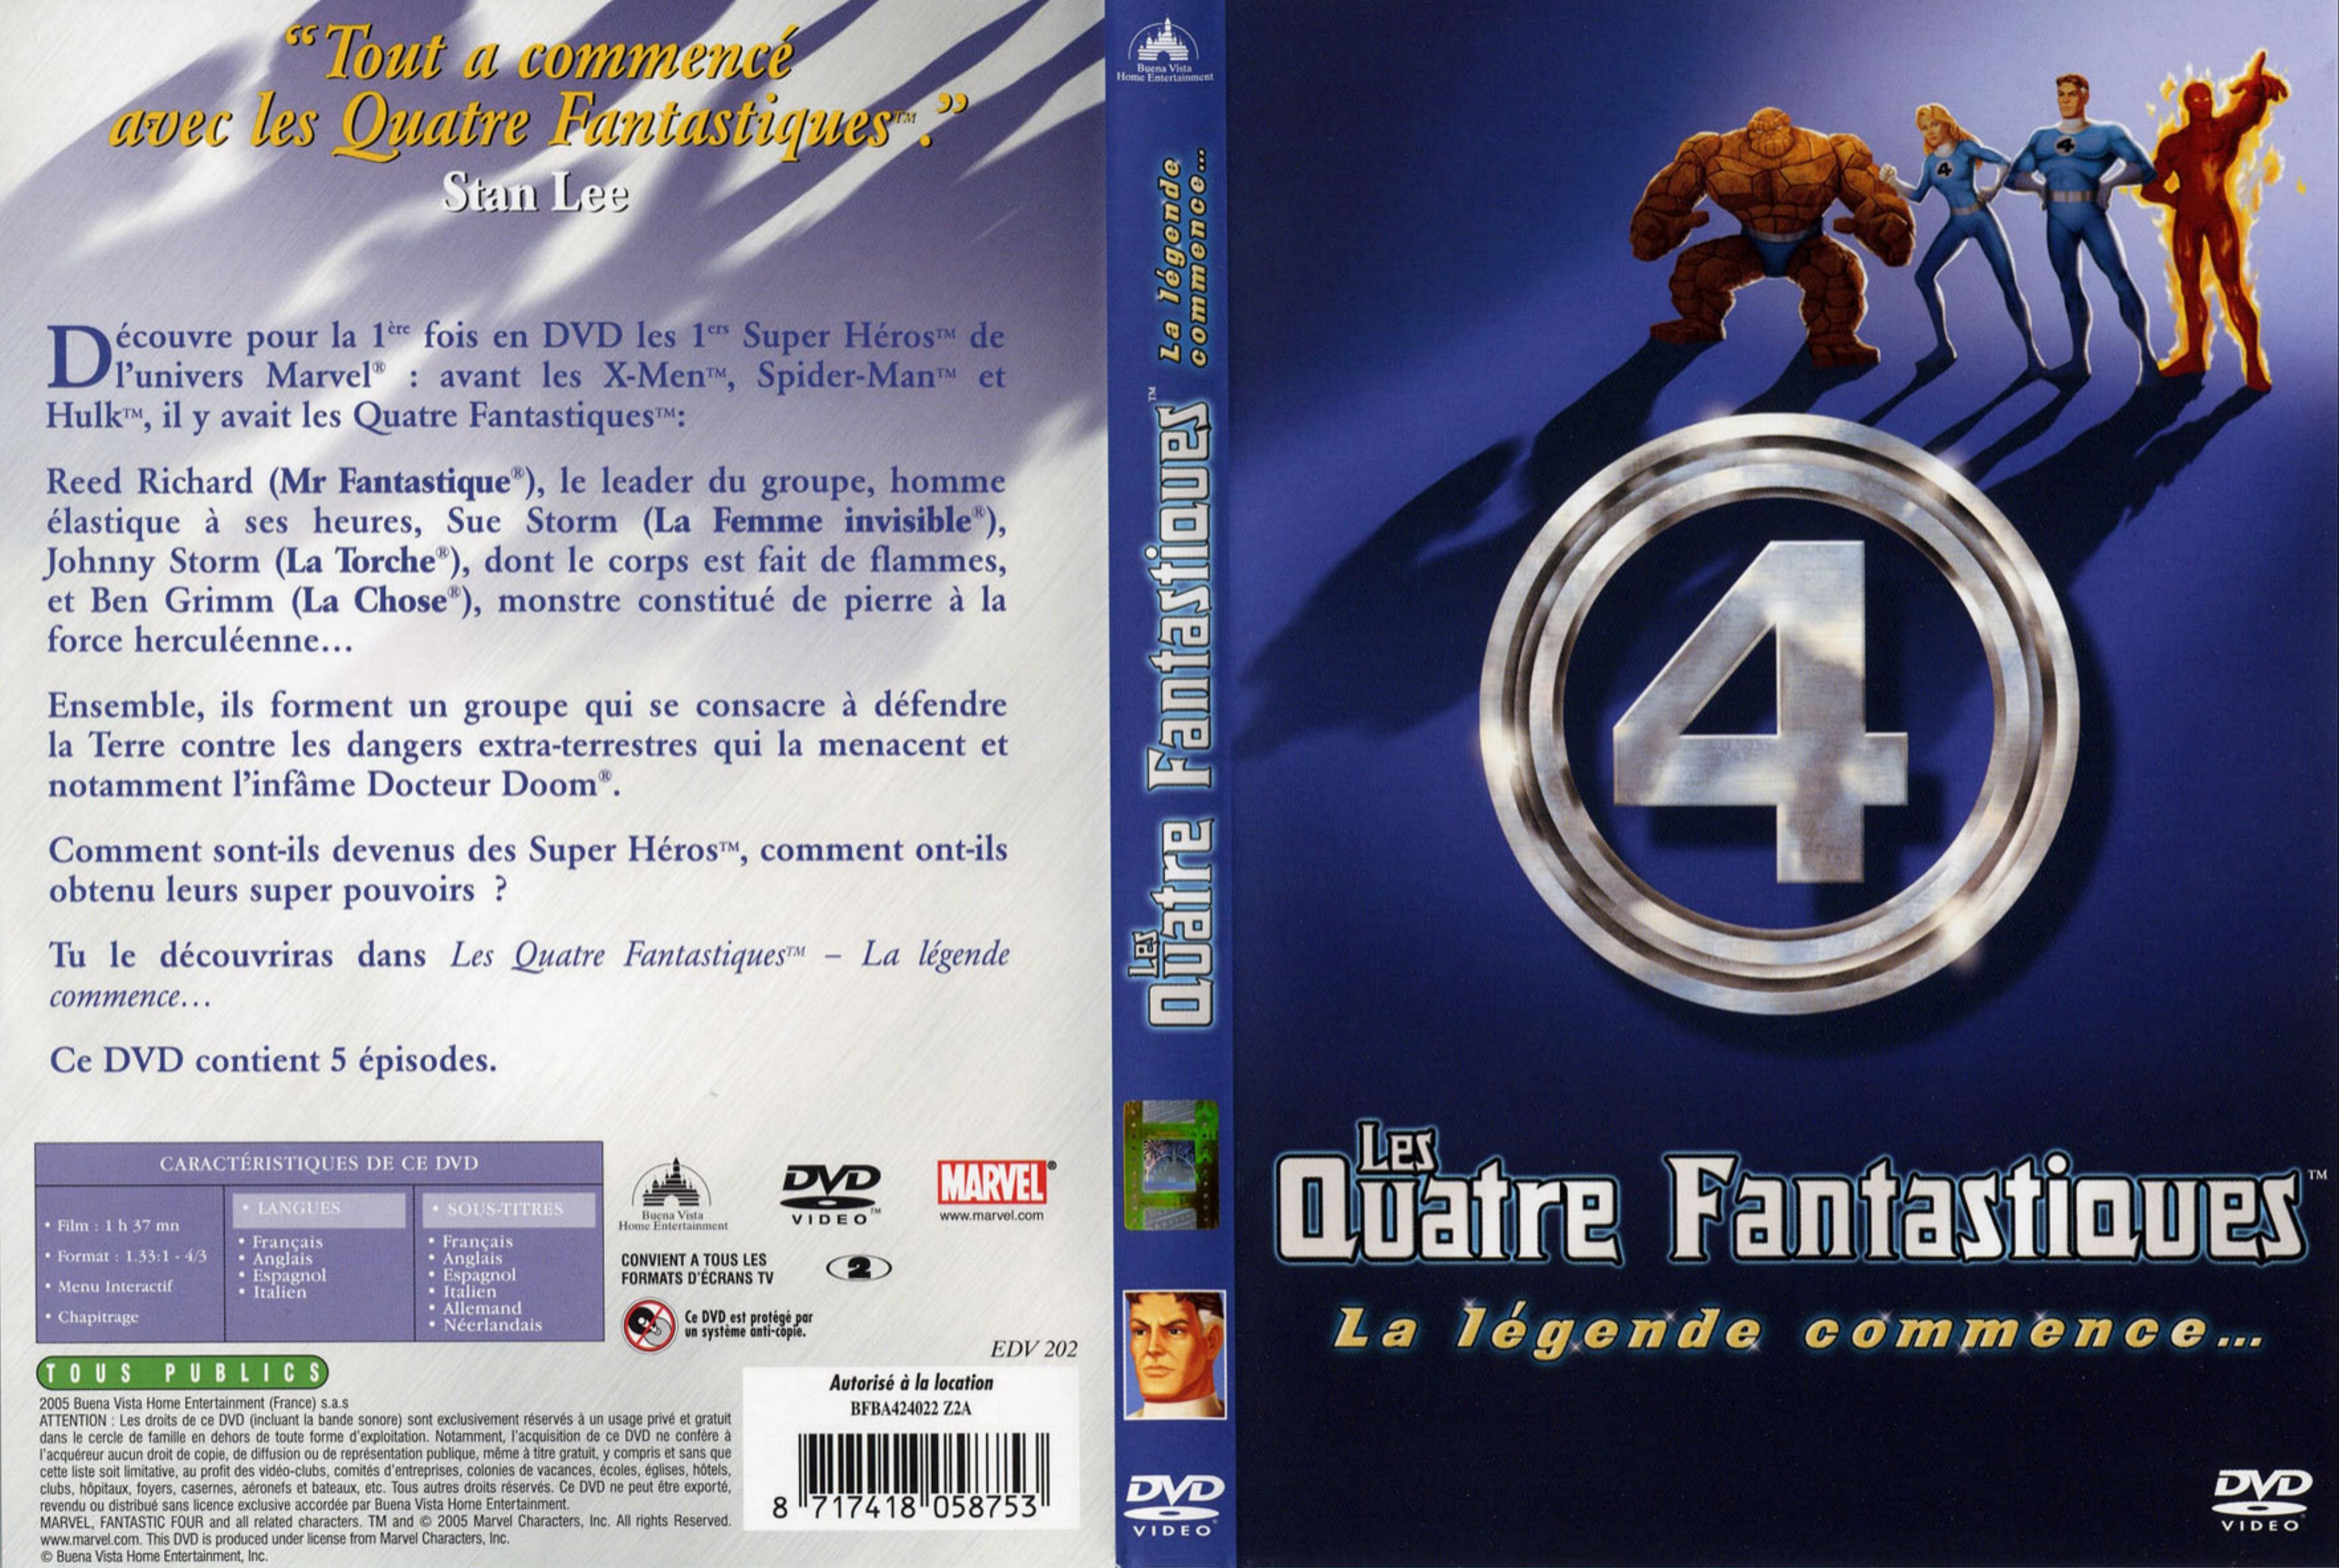 Jaquette DVD Les 4 fantastiques (DA)